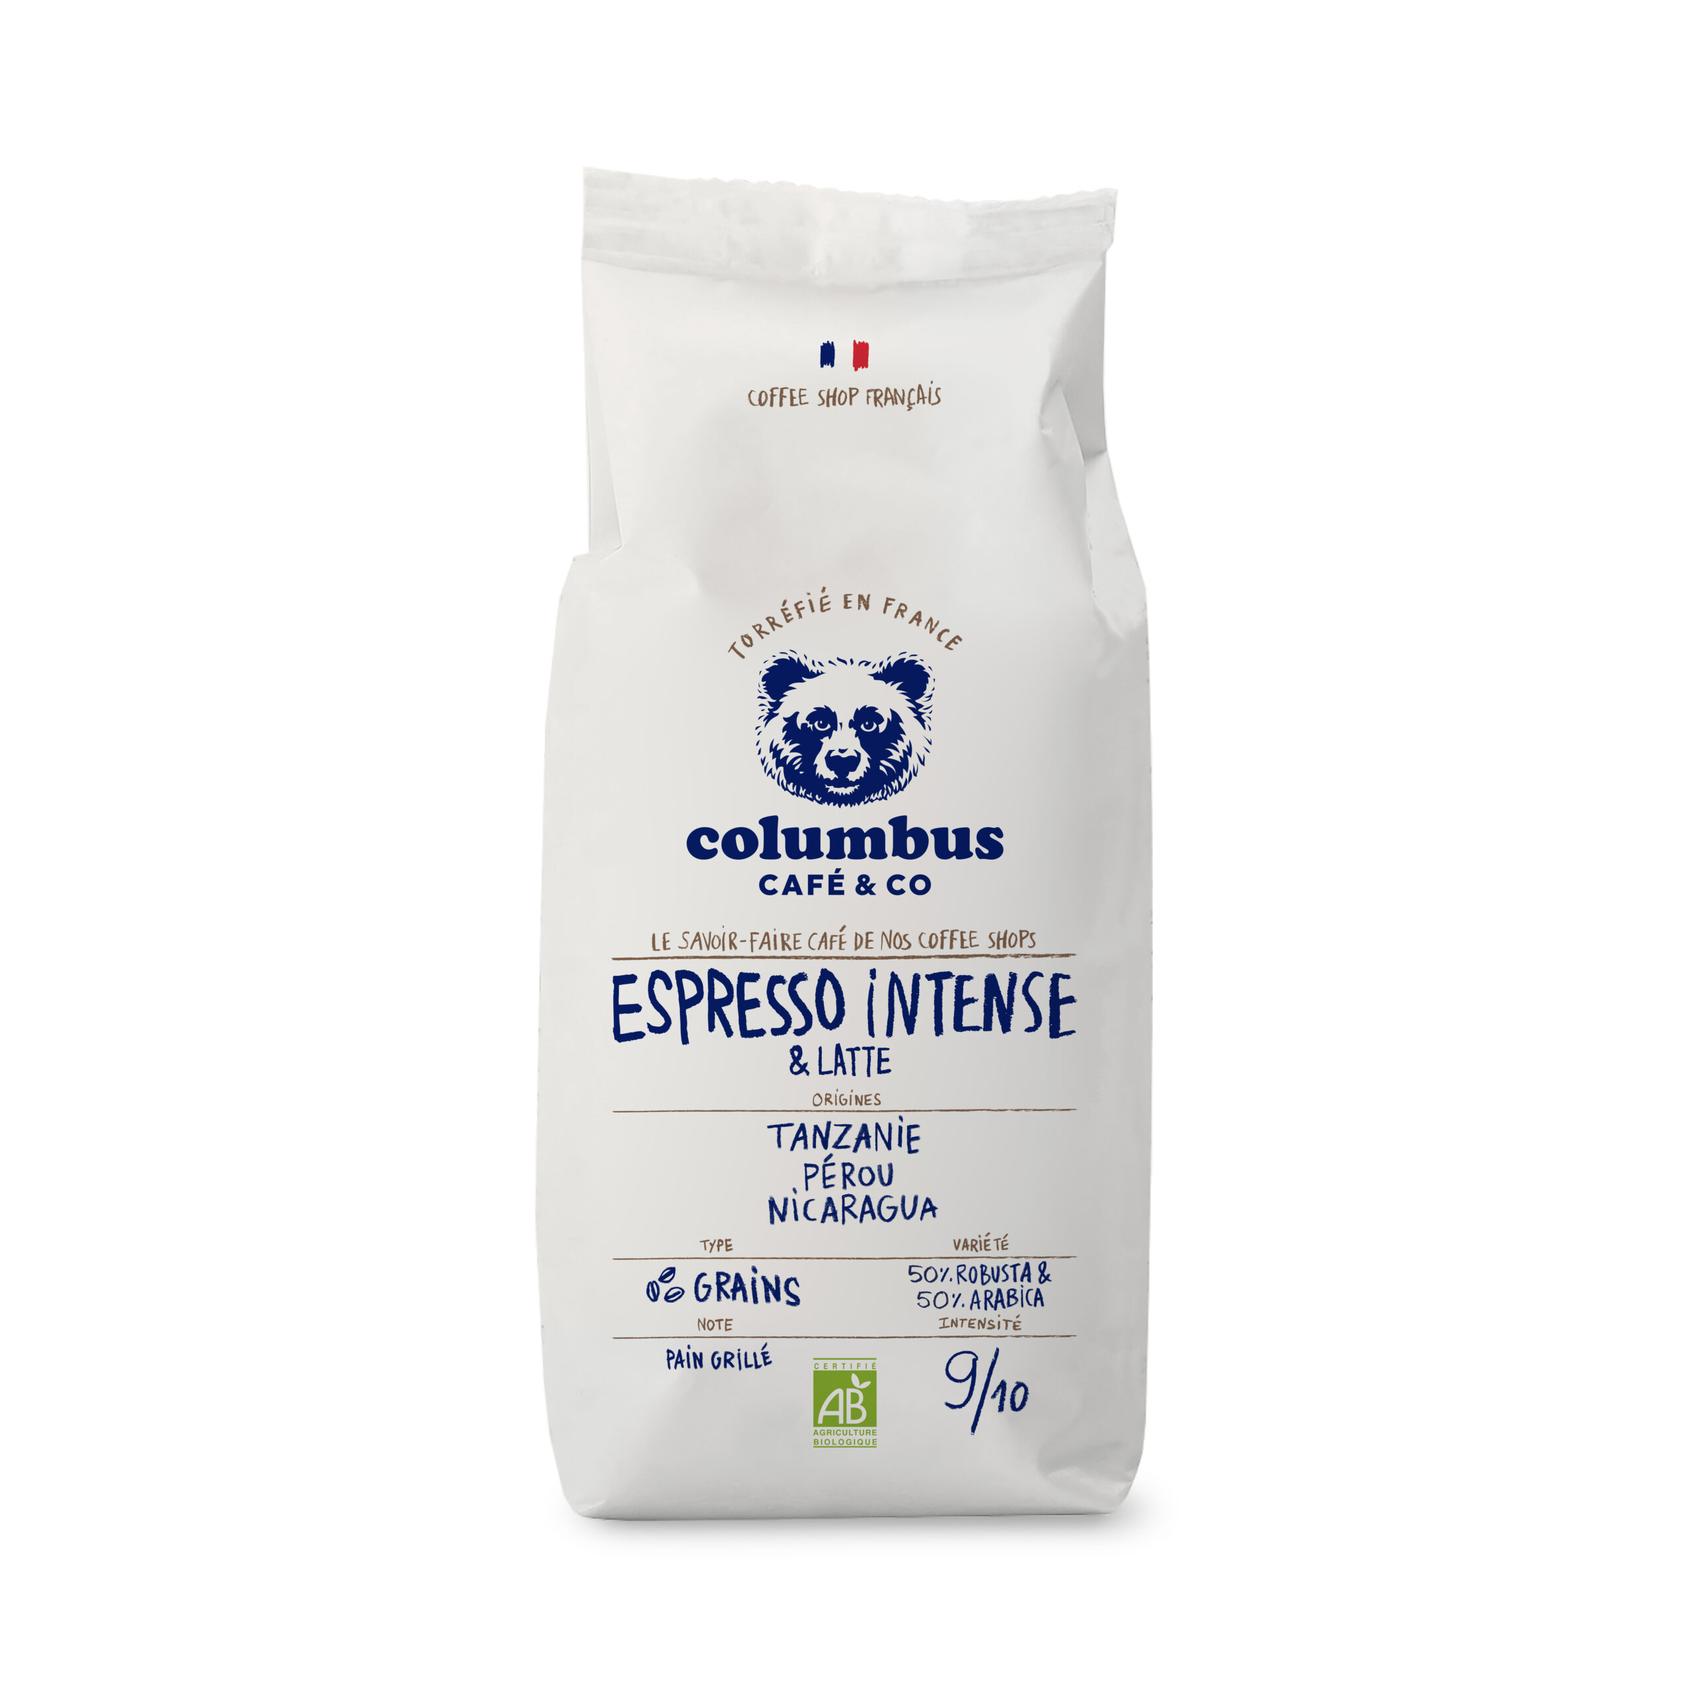 Café Grain Espresso spécial Intense & Latte 1 KG offre à 18,9€ sur Columbus Café